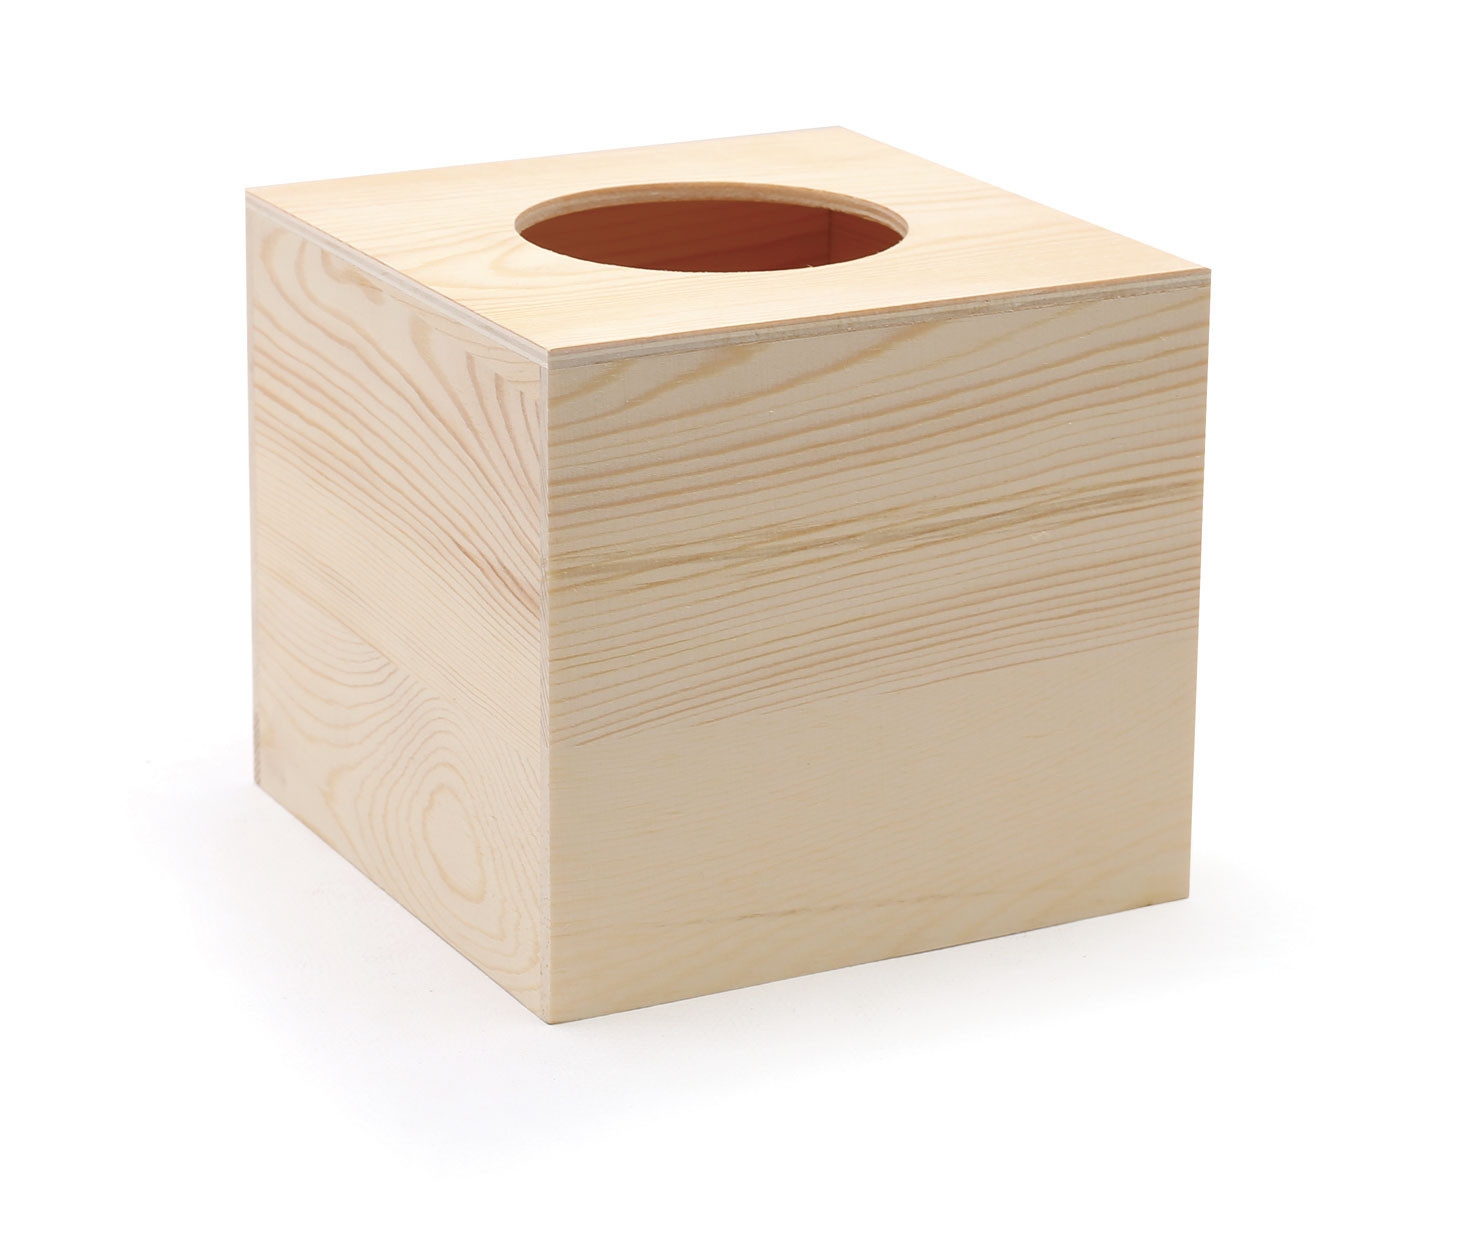 Boîte à mouchoir en bois carrée 13 x 13 x 14 cm